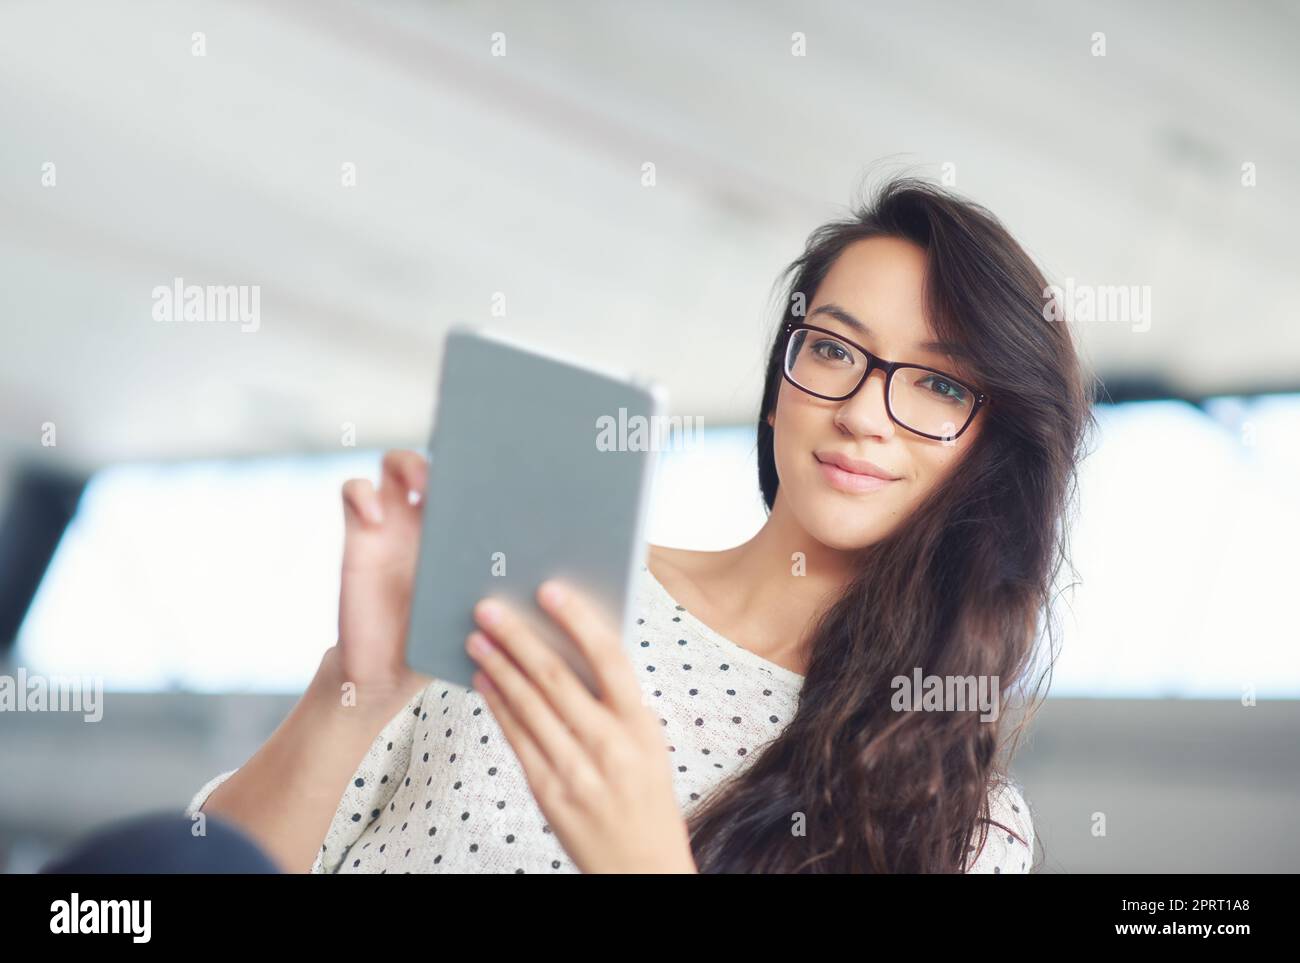 Votre présence en ligne est importante. Une jeune femme attrayante utilisant une tablette numérique Banque D'Images